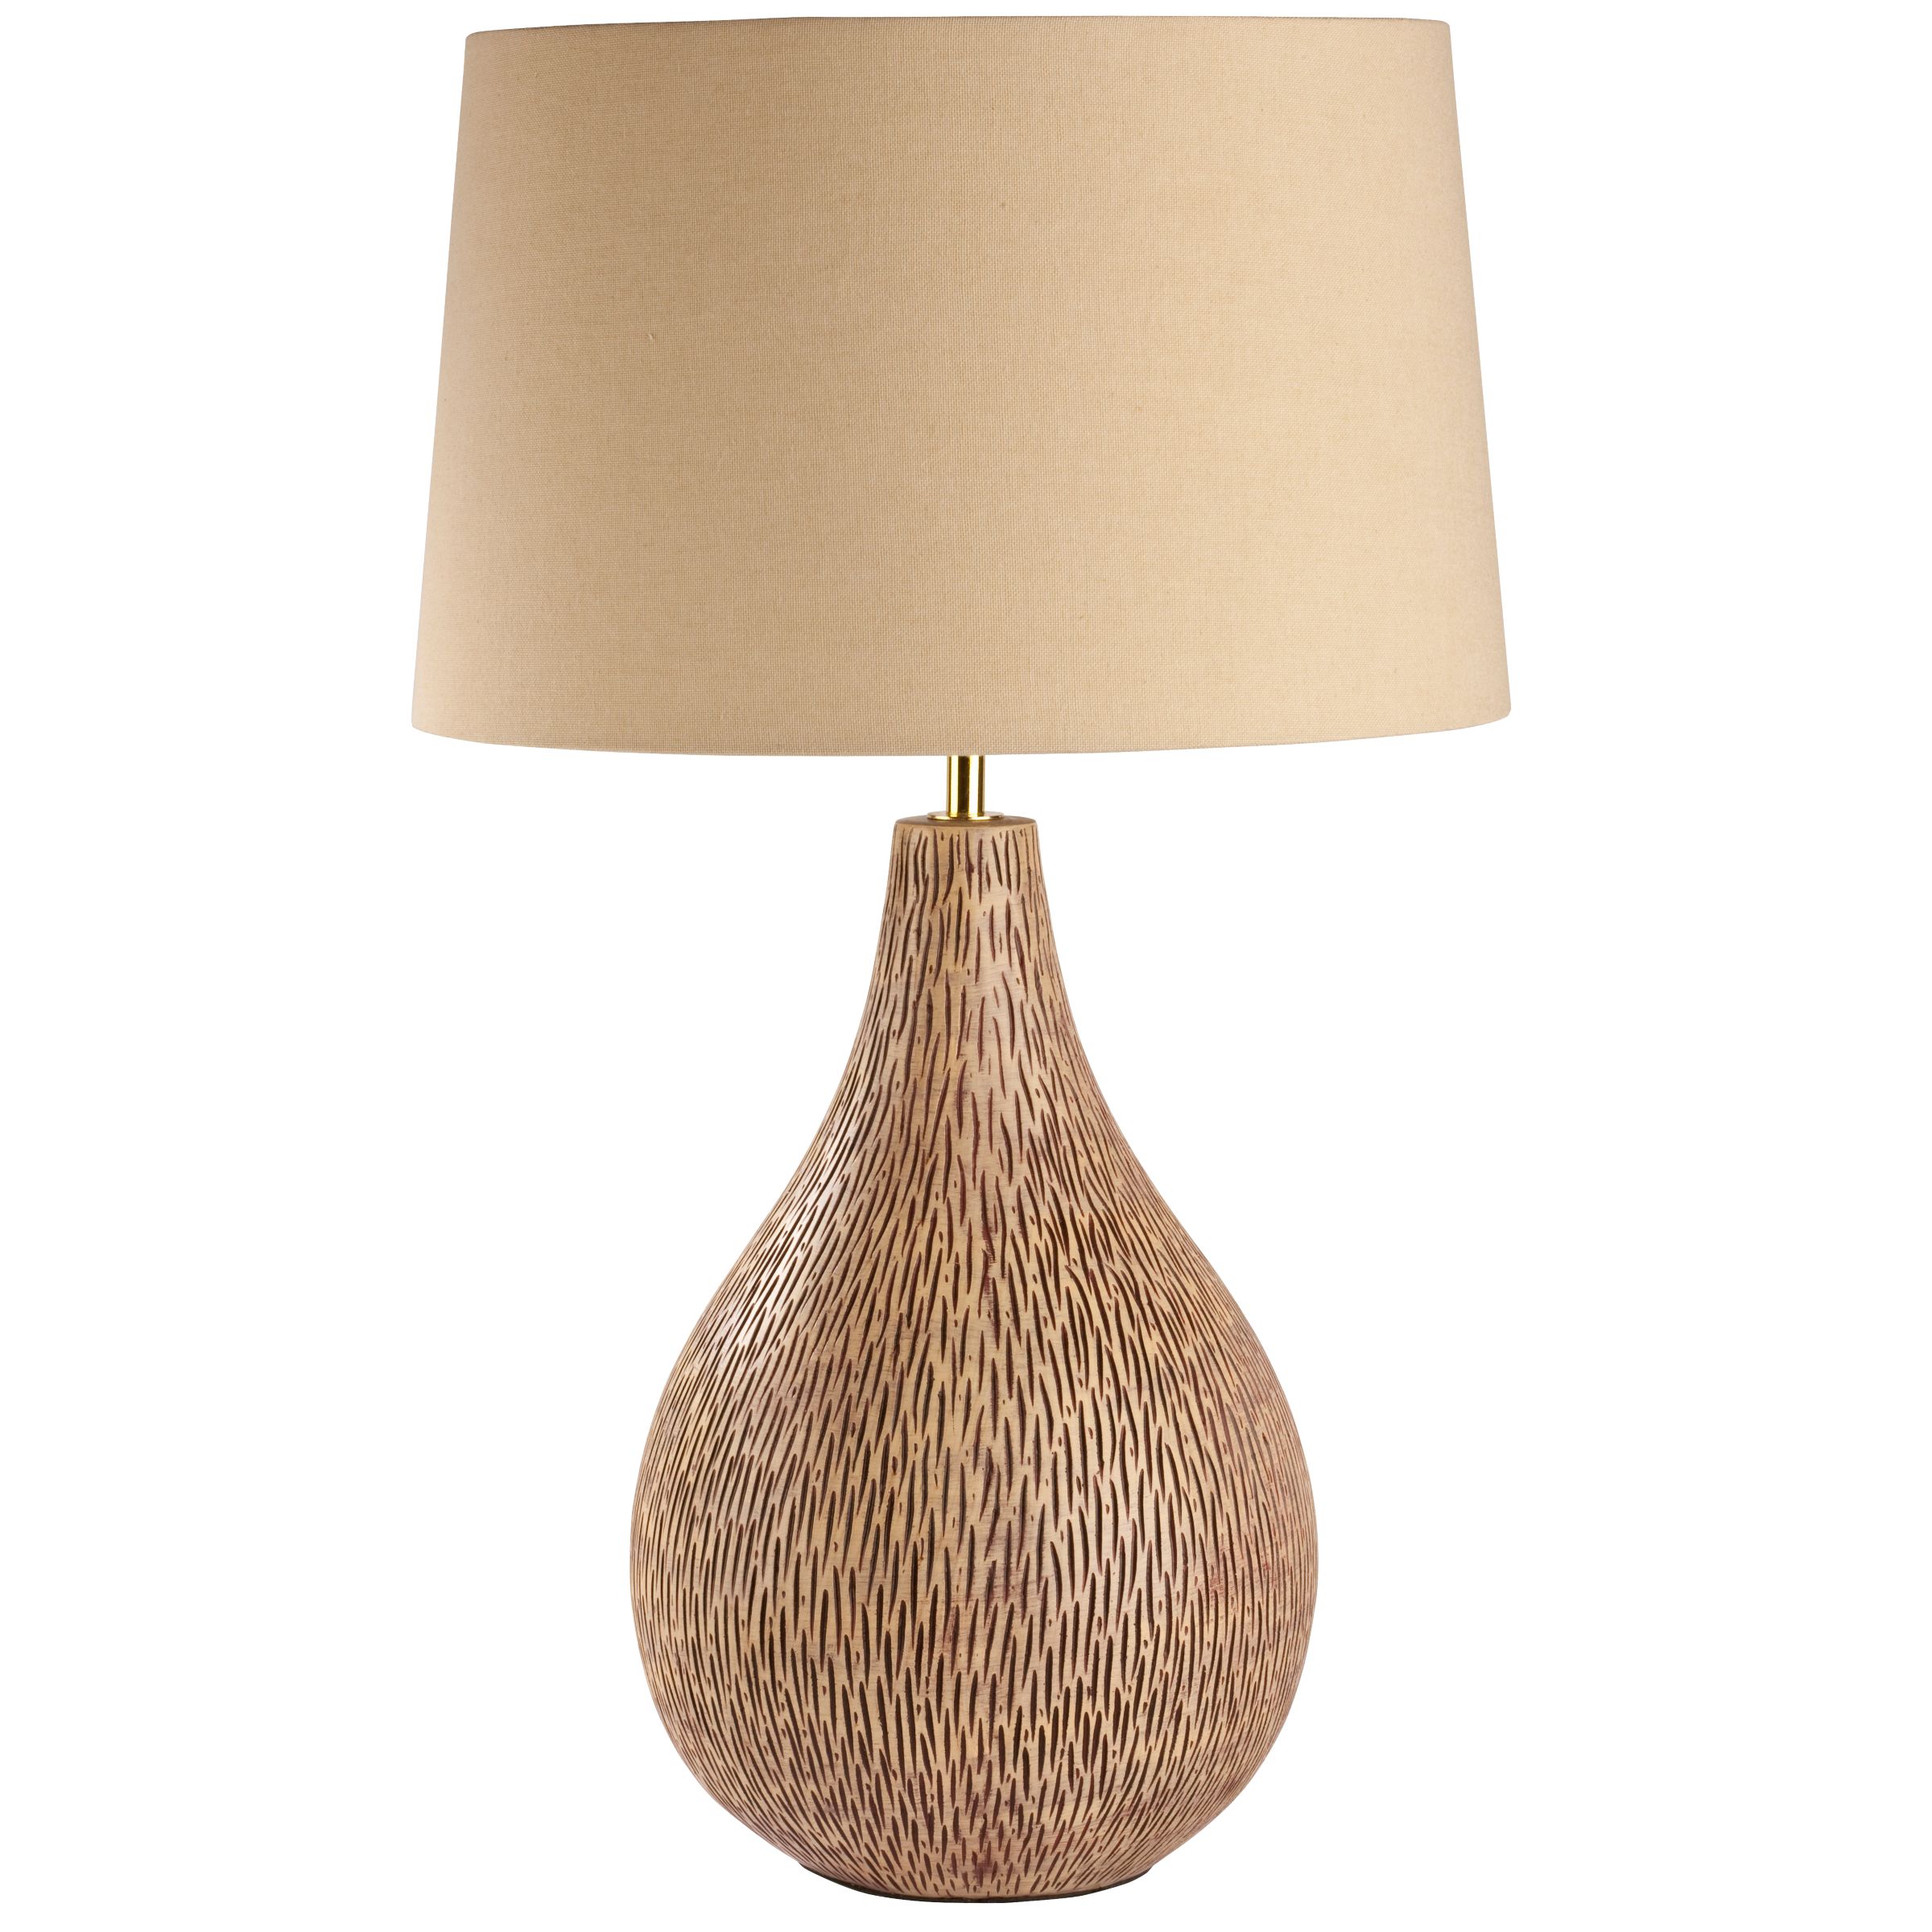 John Lewis Orianna Table Lamp